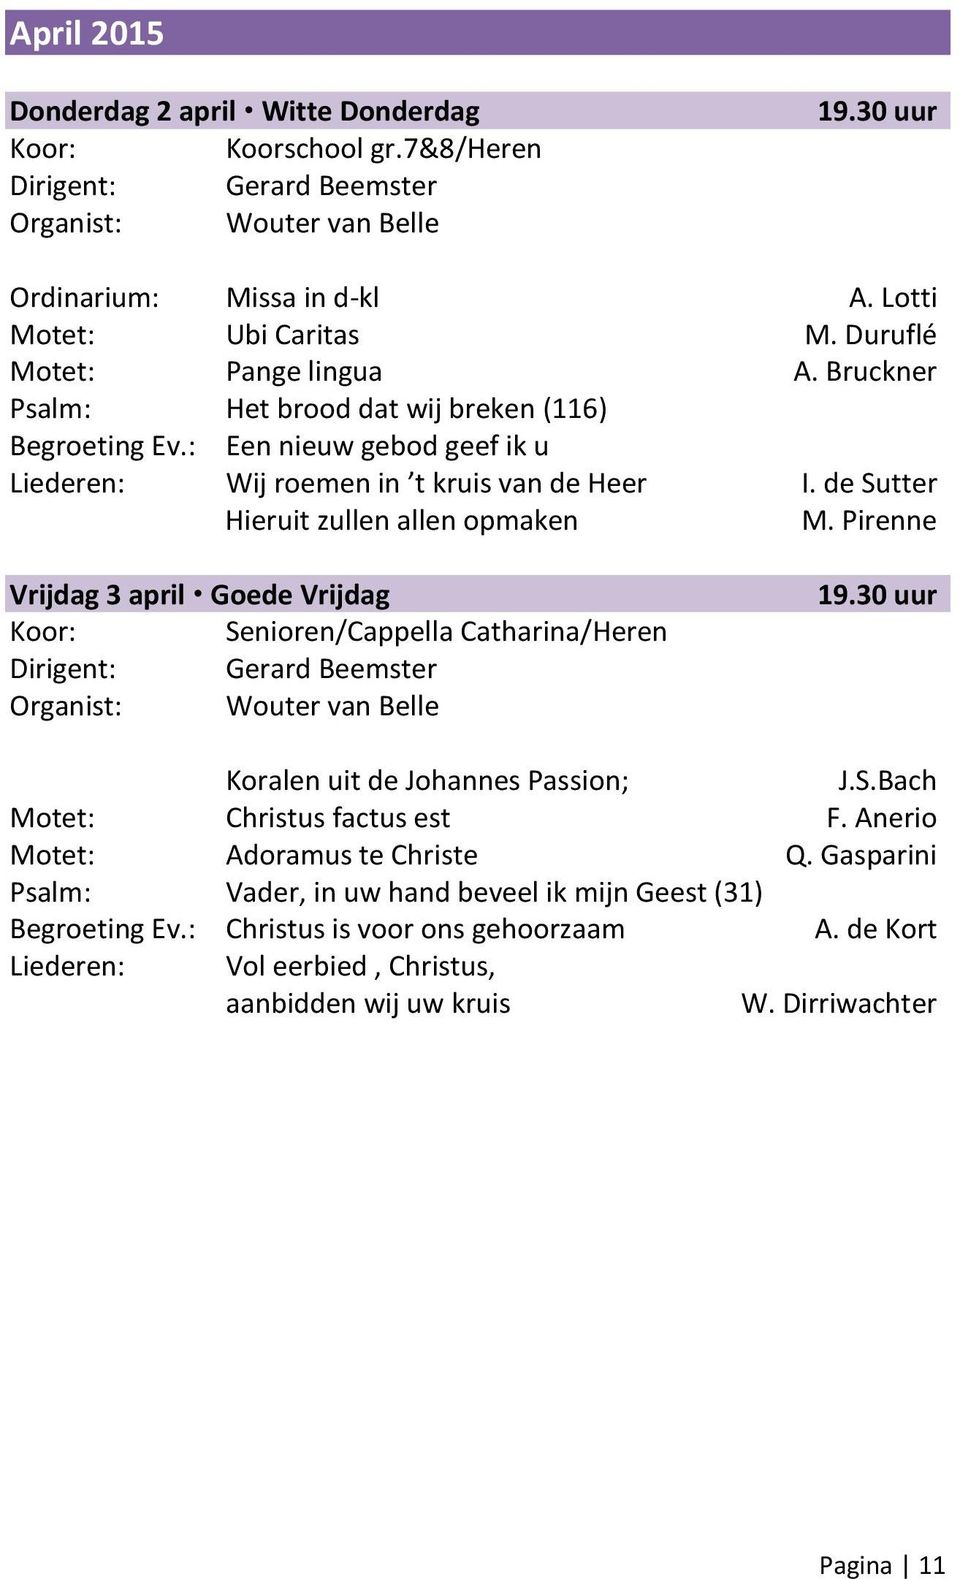 Pirenne Vrijdag 3 april Goede Vrijdag Senioren/Cappella Catharina/Heren 19.30 uur Koralen uit de Johannes Passion; J.S.Bach Motet: Christus factus est F.